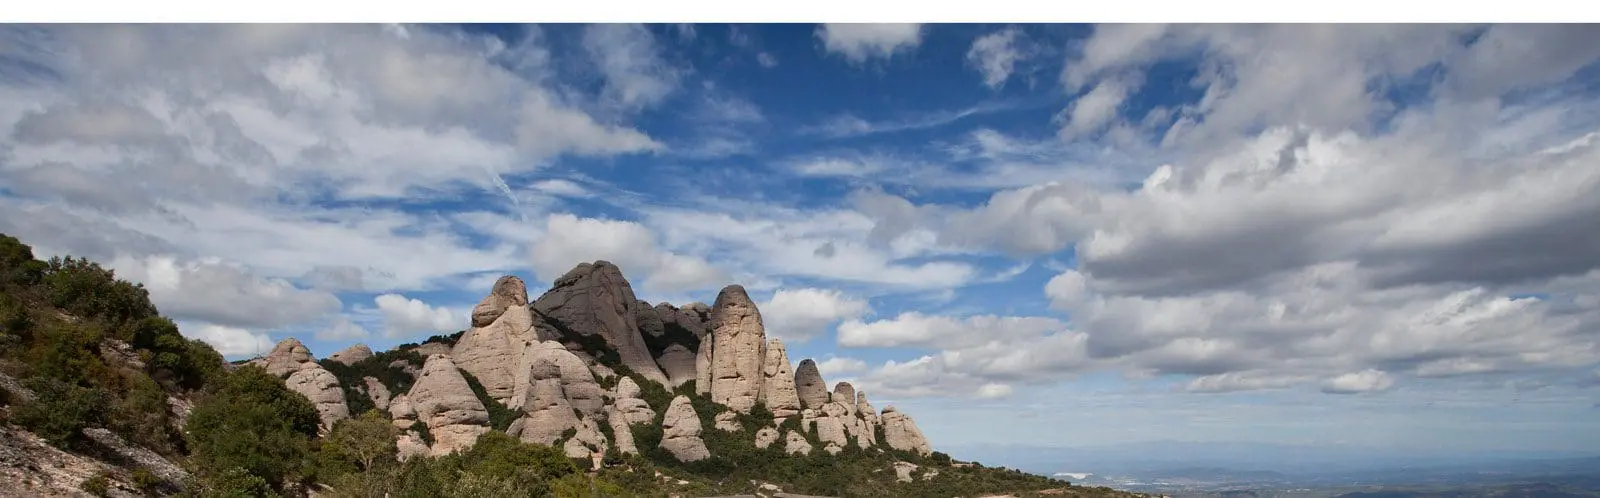 Vista panoràmica del Parc Natural de Montserrat / Vista panorámica del Parque Natural de Montserrat